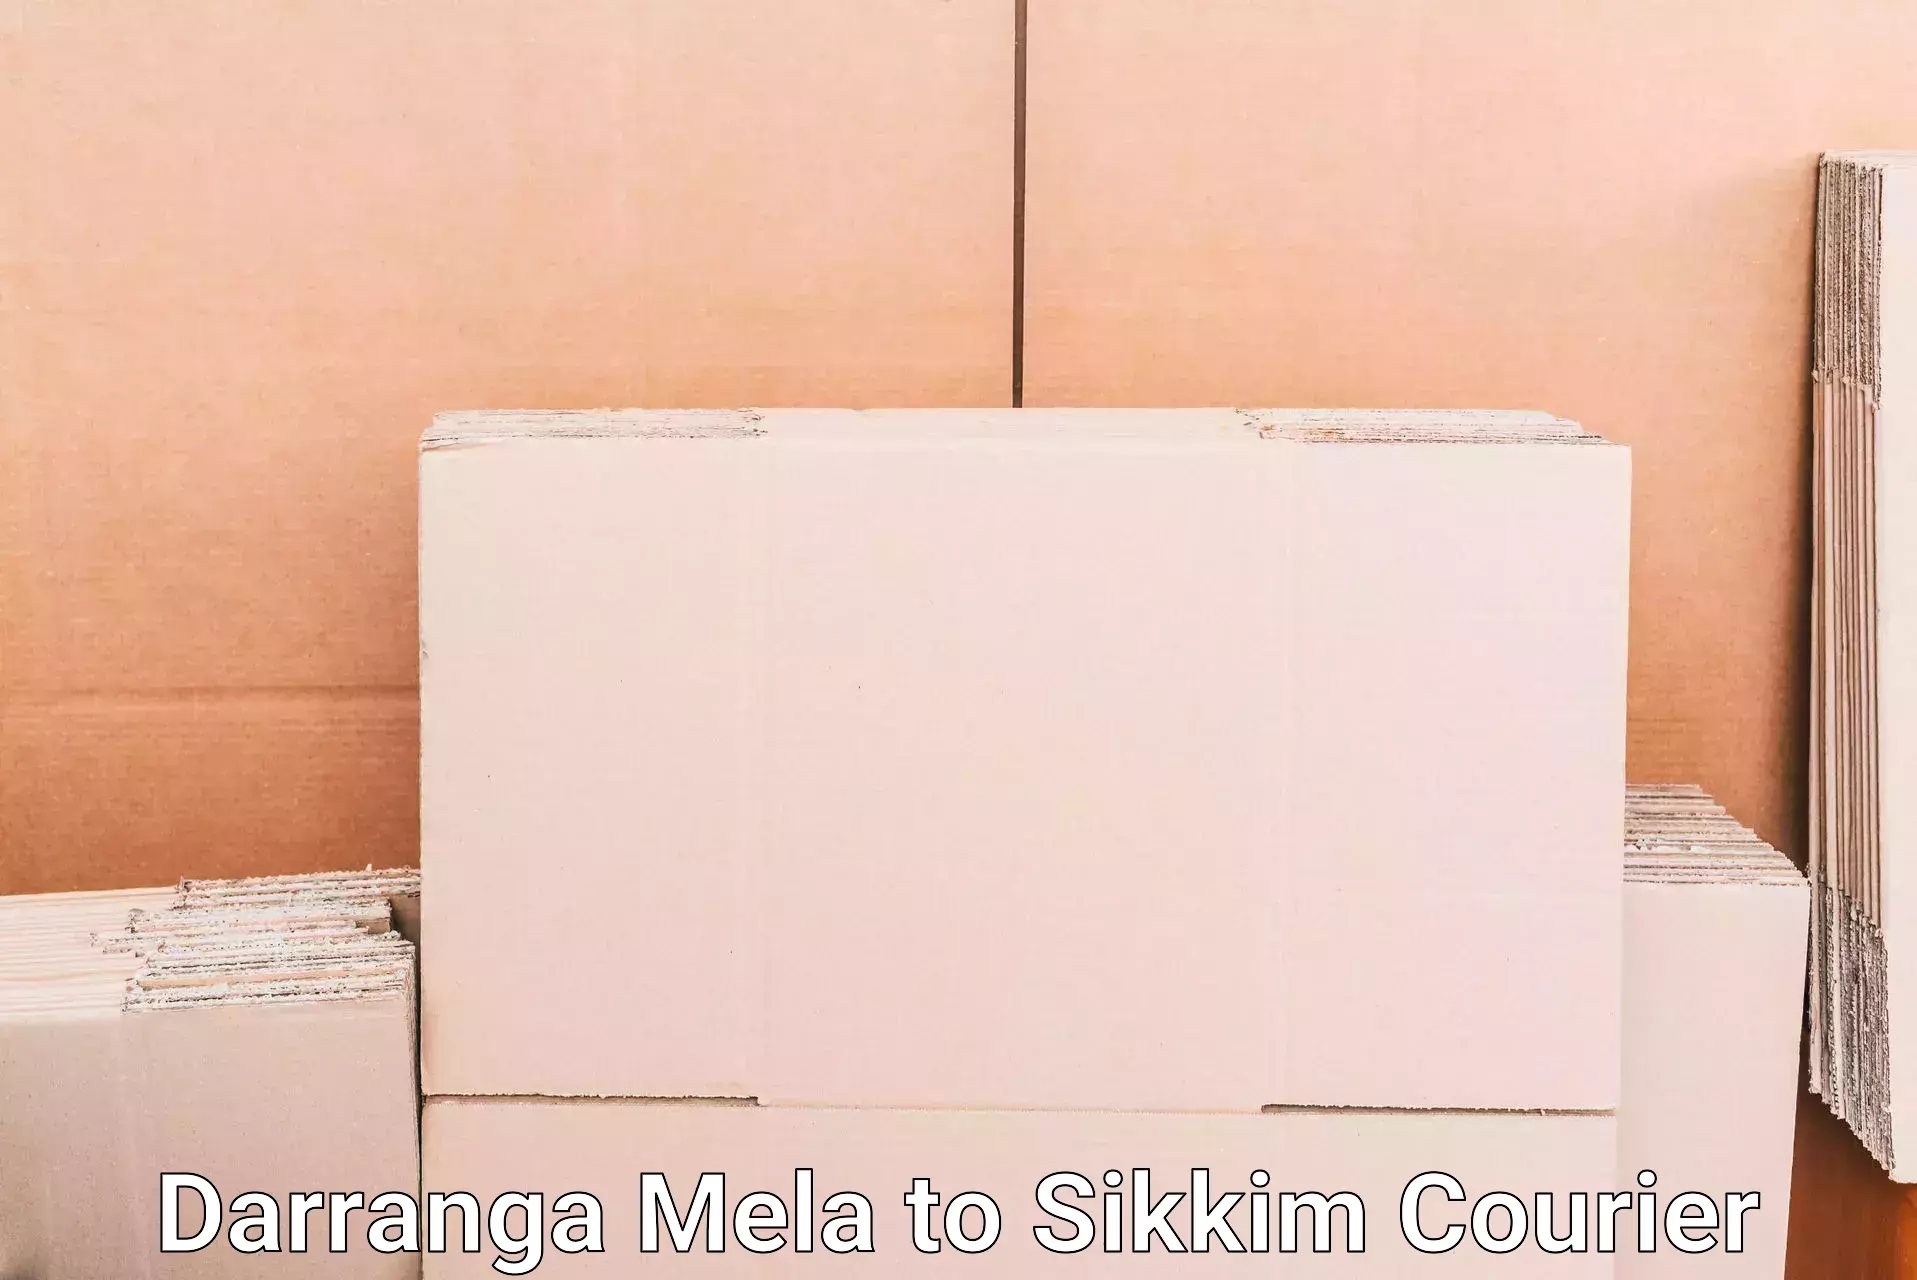 Baggage transport scheduler Darranga Mela to Pelling